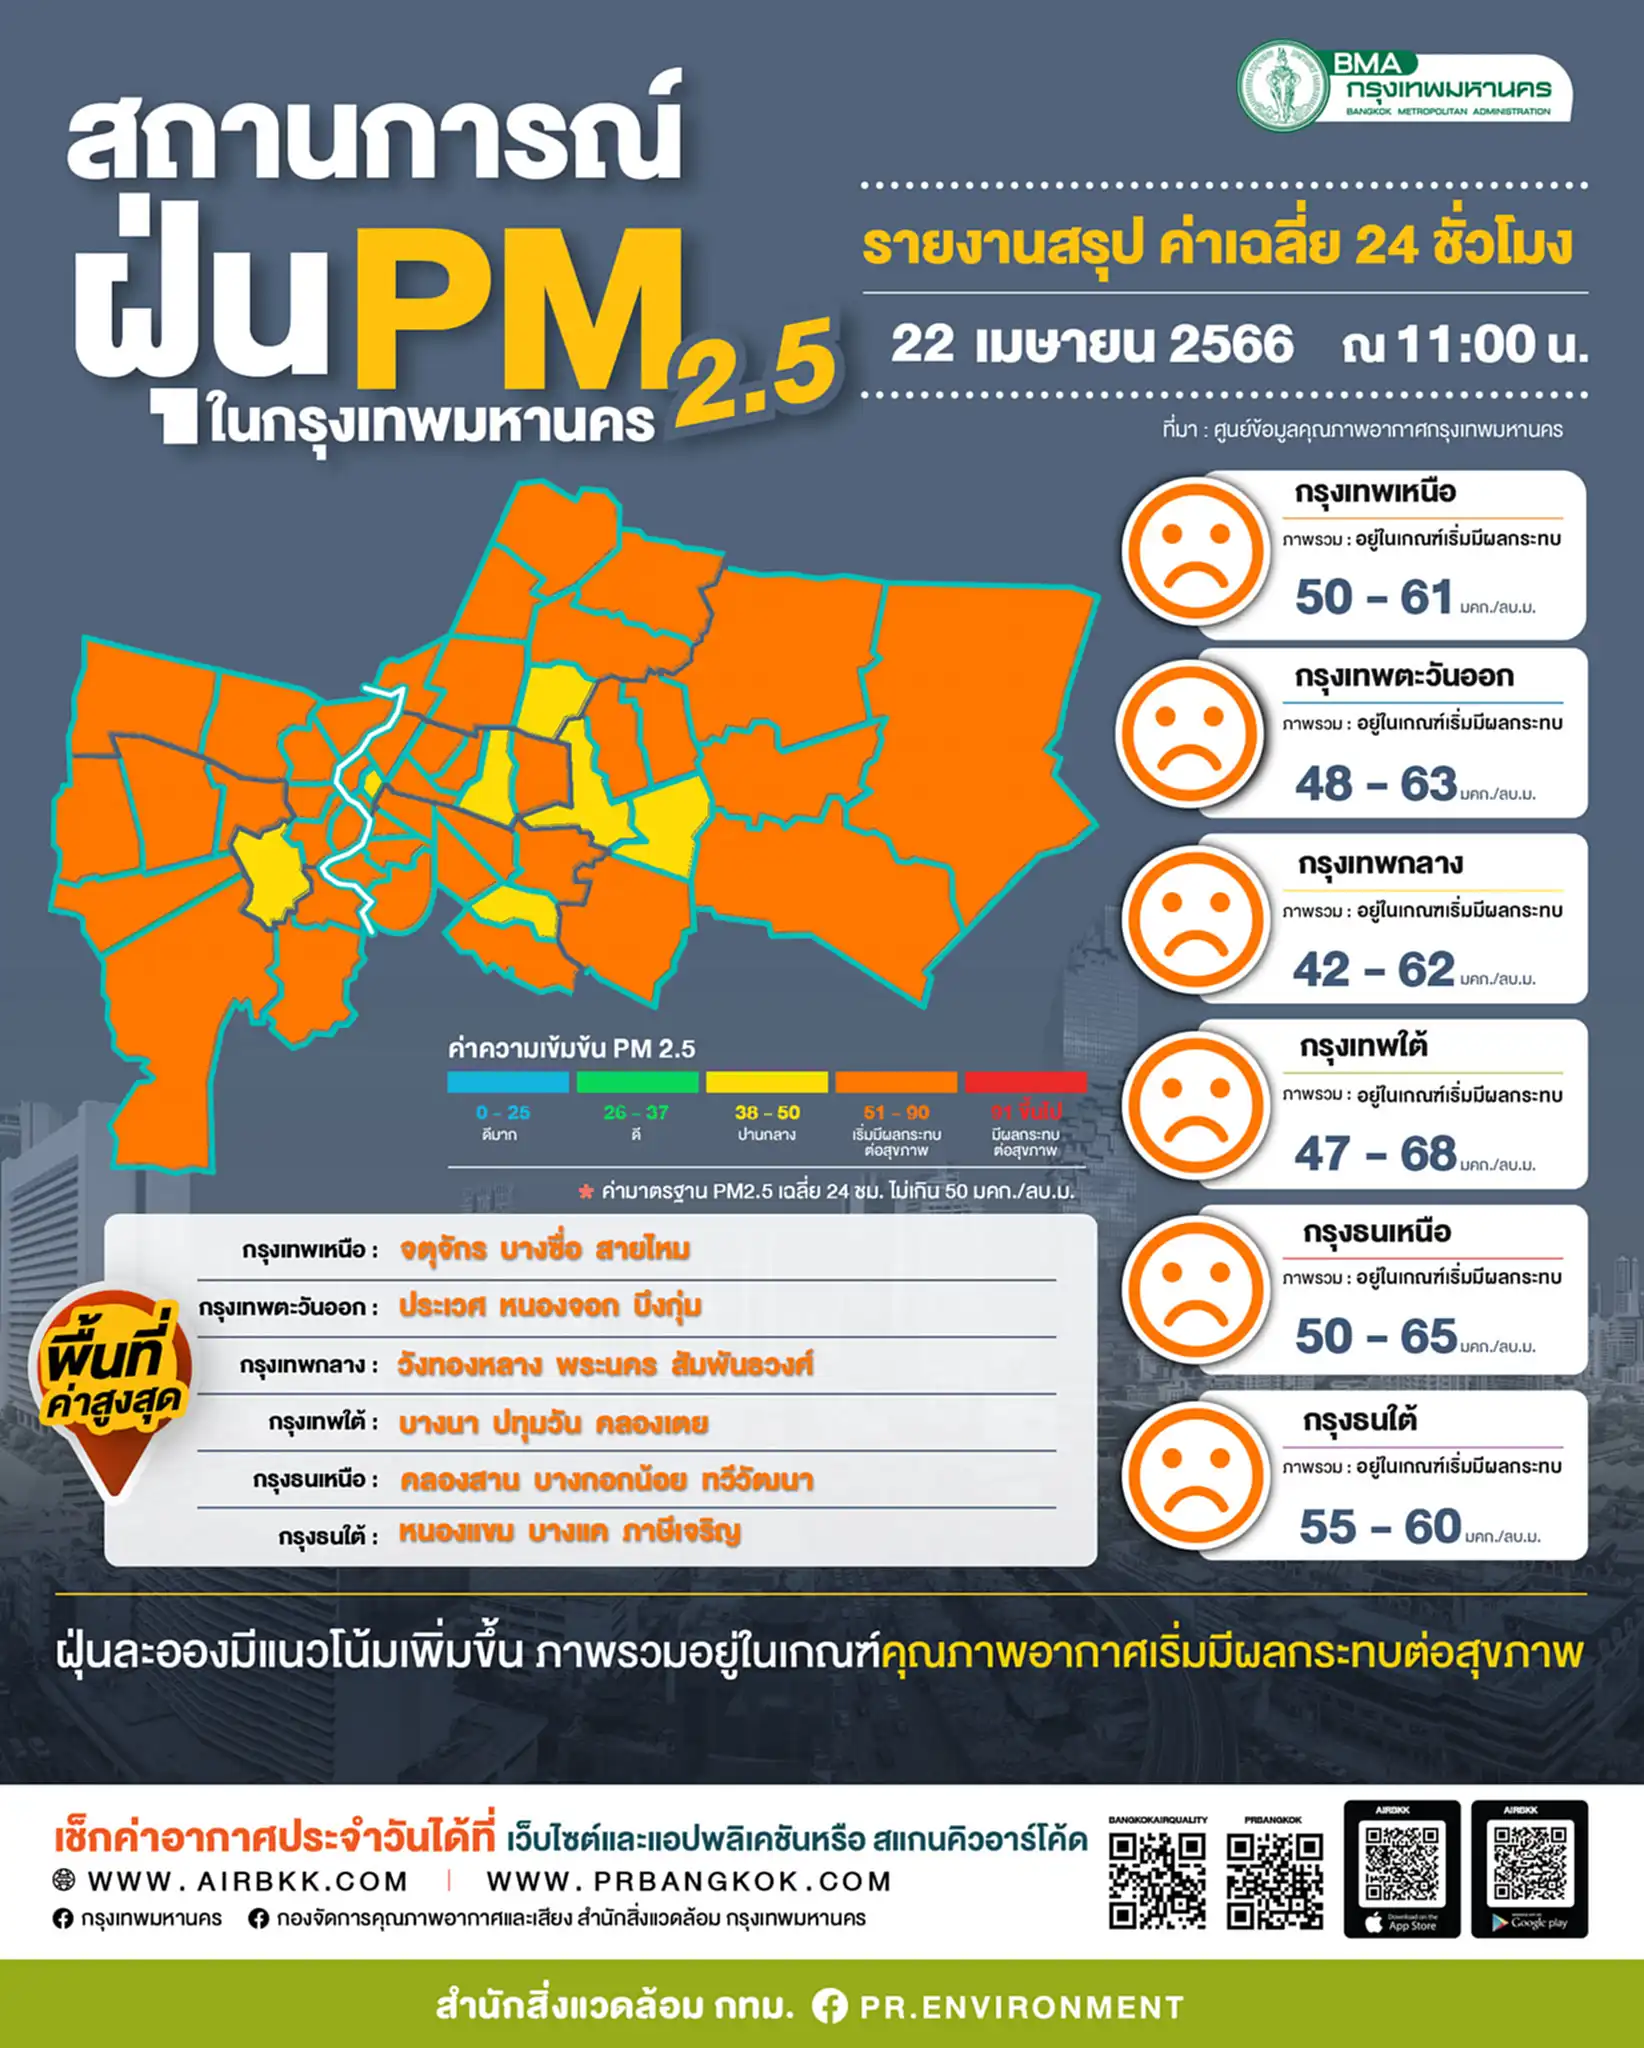 PM 2.5 p m 2.5 today ค่า ฝุ่น p m 2.5 ต้อง ไม่ เกิน เท่าไหร่ ระดับ ฝุ่น p m 2.5 วัน นี้